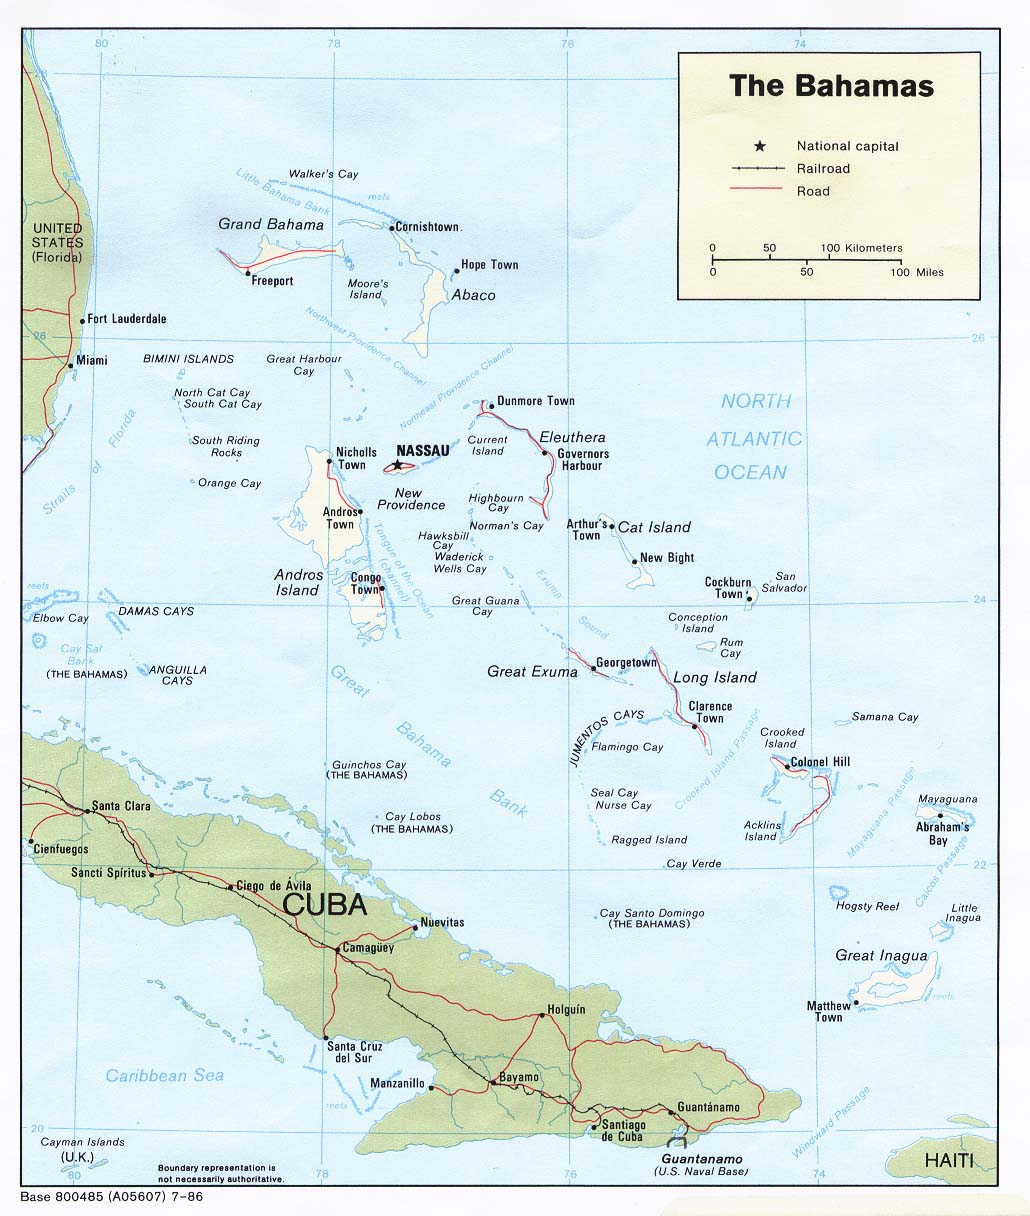 Mapa Político de las Bahamas